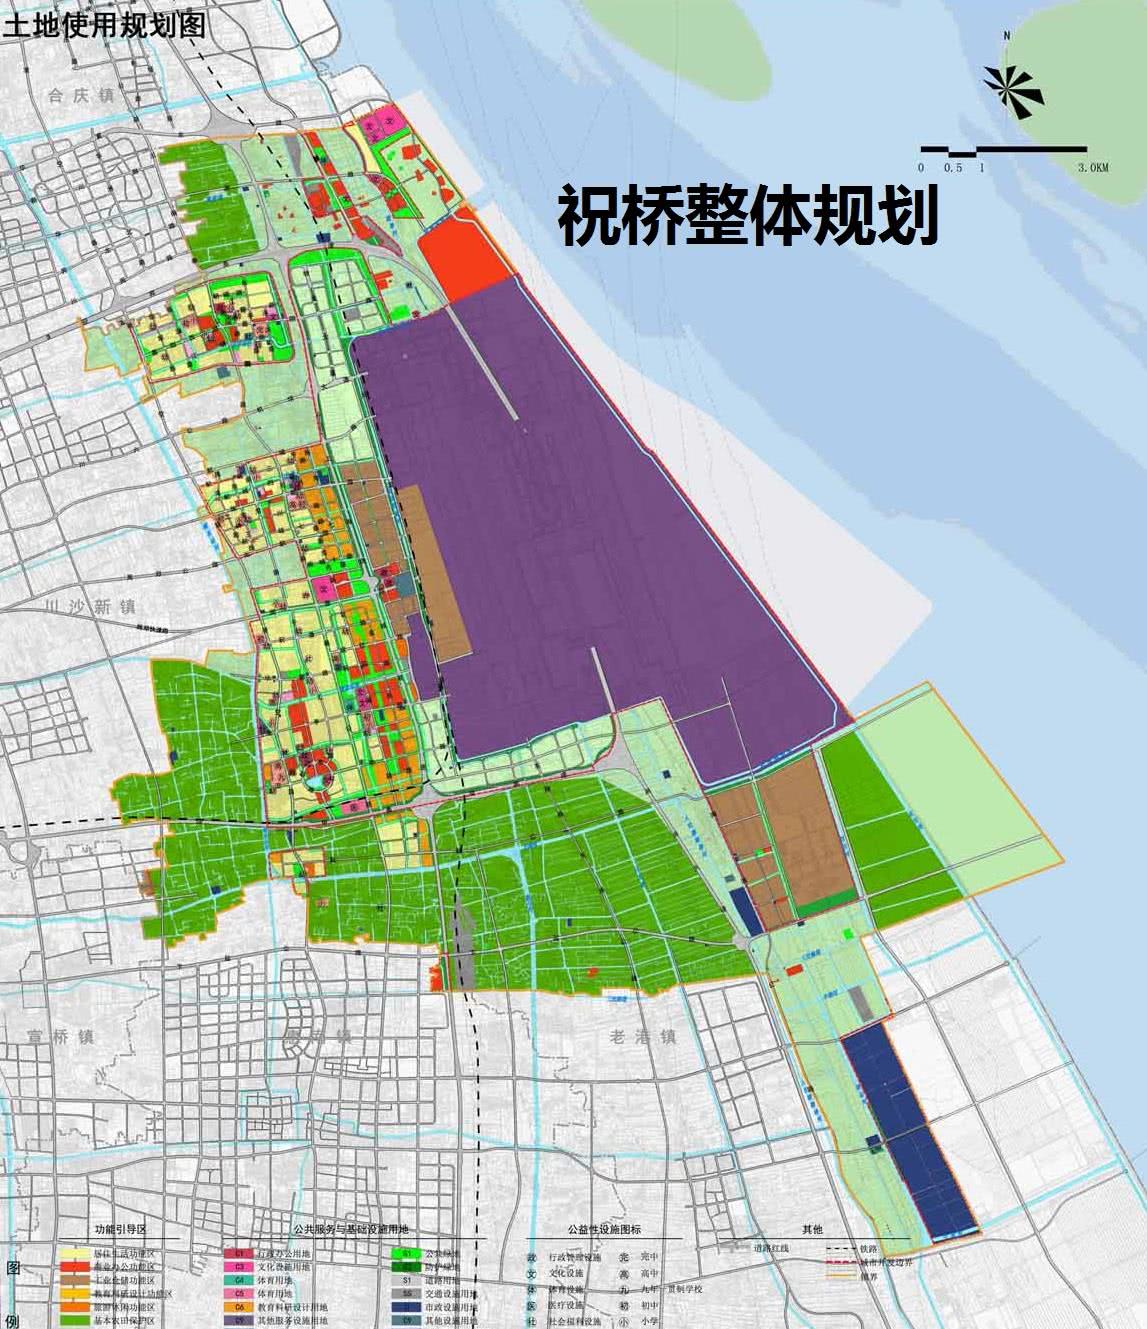 解析上海市祝桥镇总体规划上海东站和浦东机场组成枢纽之城